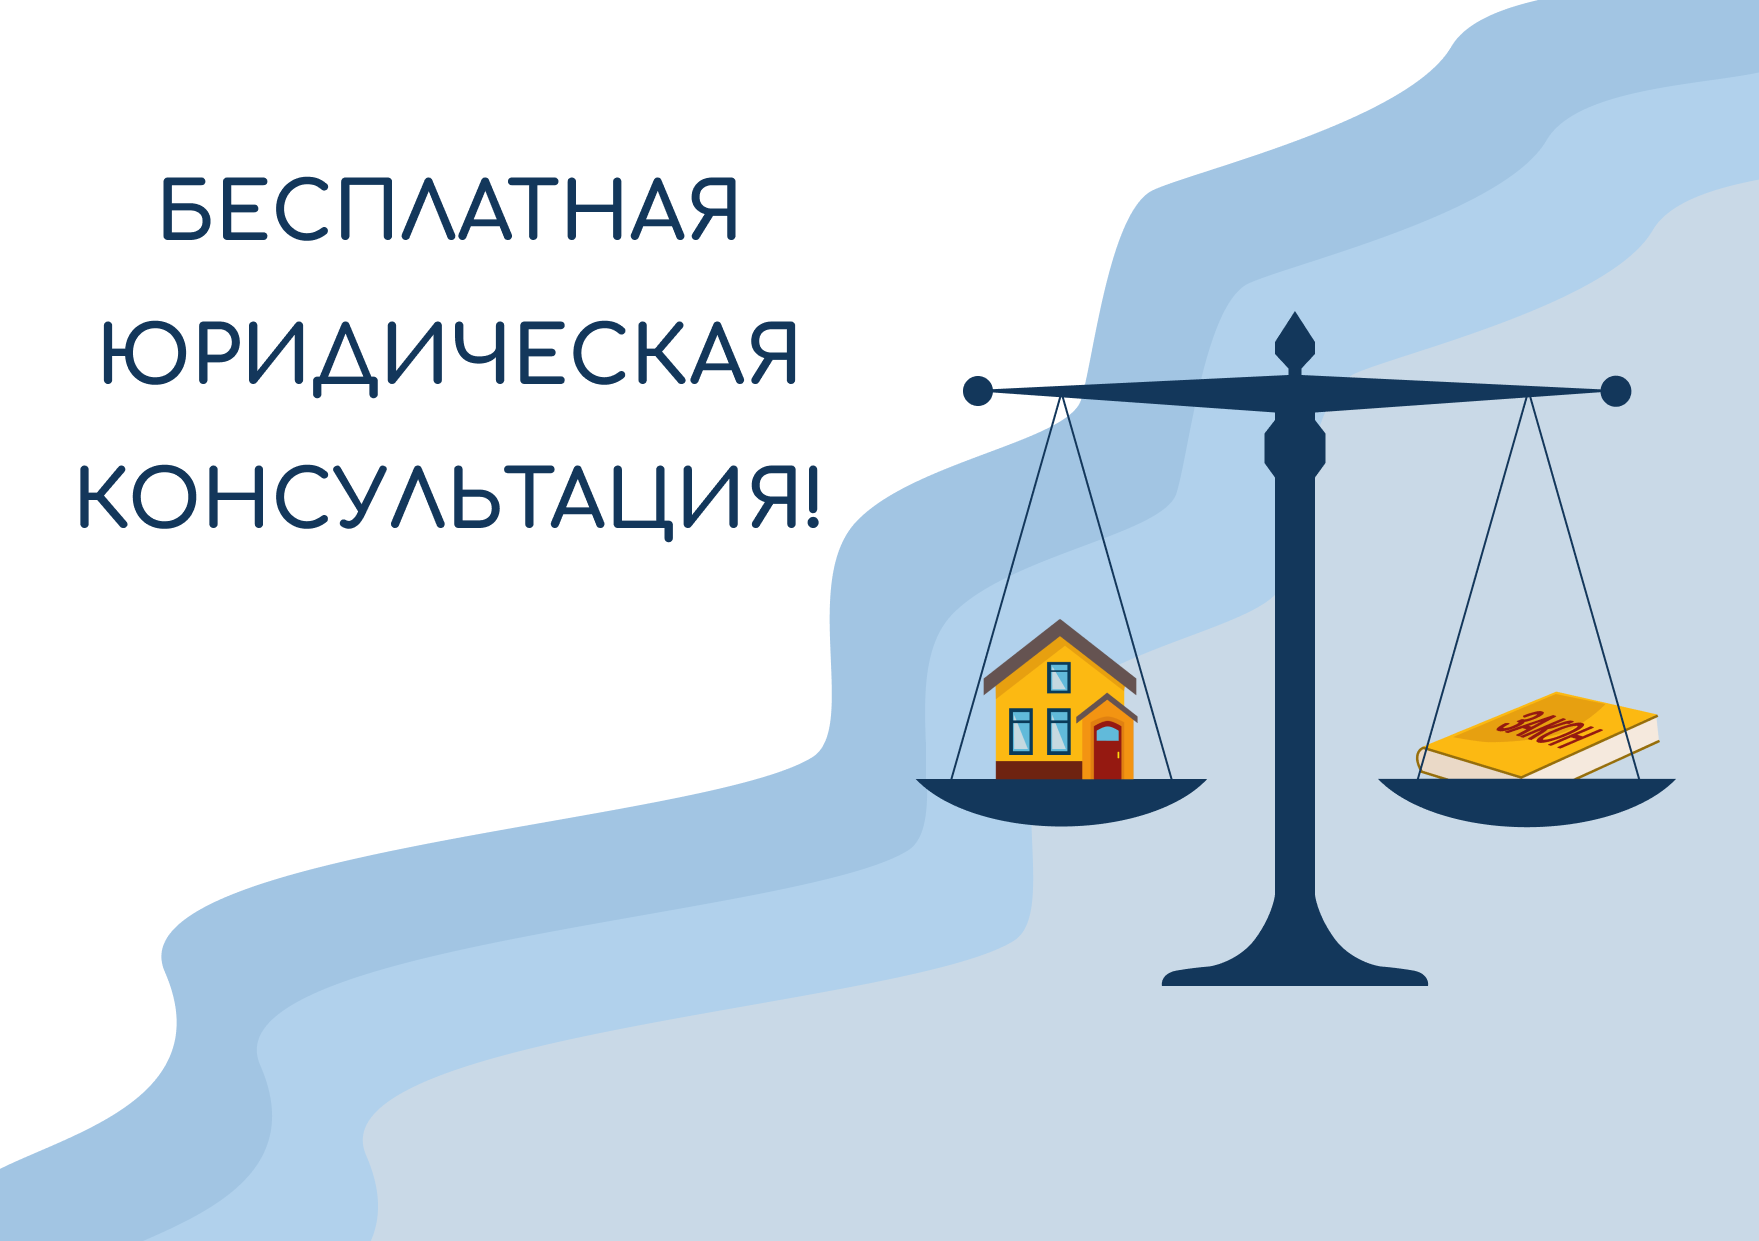 Подробнее о статье Бесплатную консультацию юристов белорусы смогут получить в последний четверг февраля